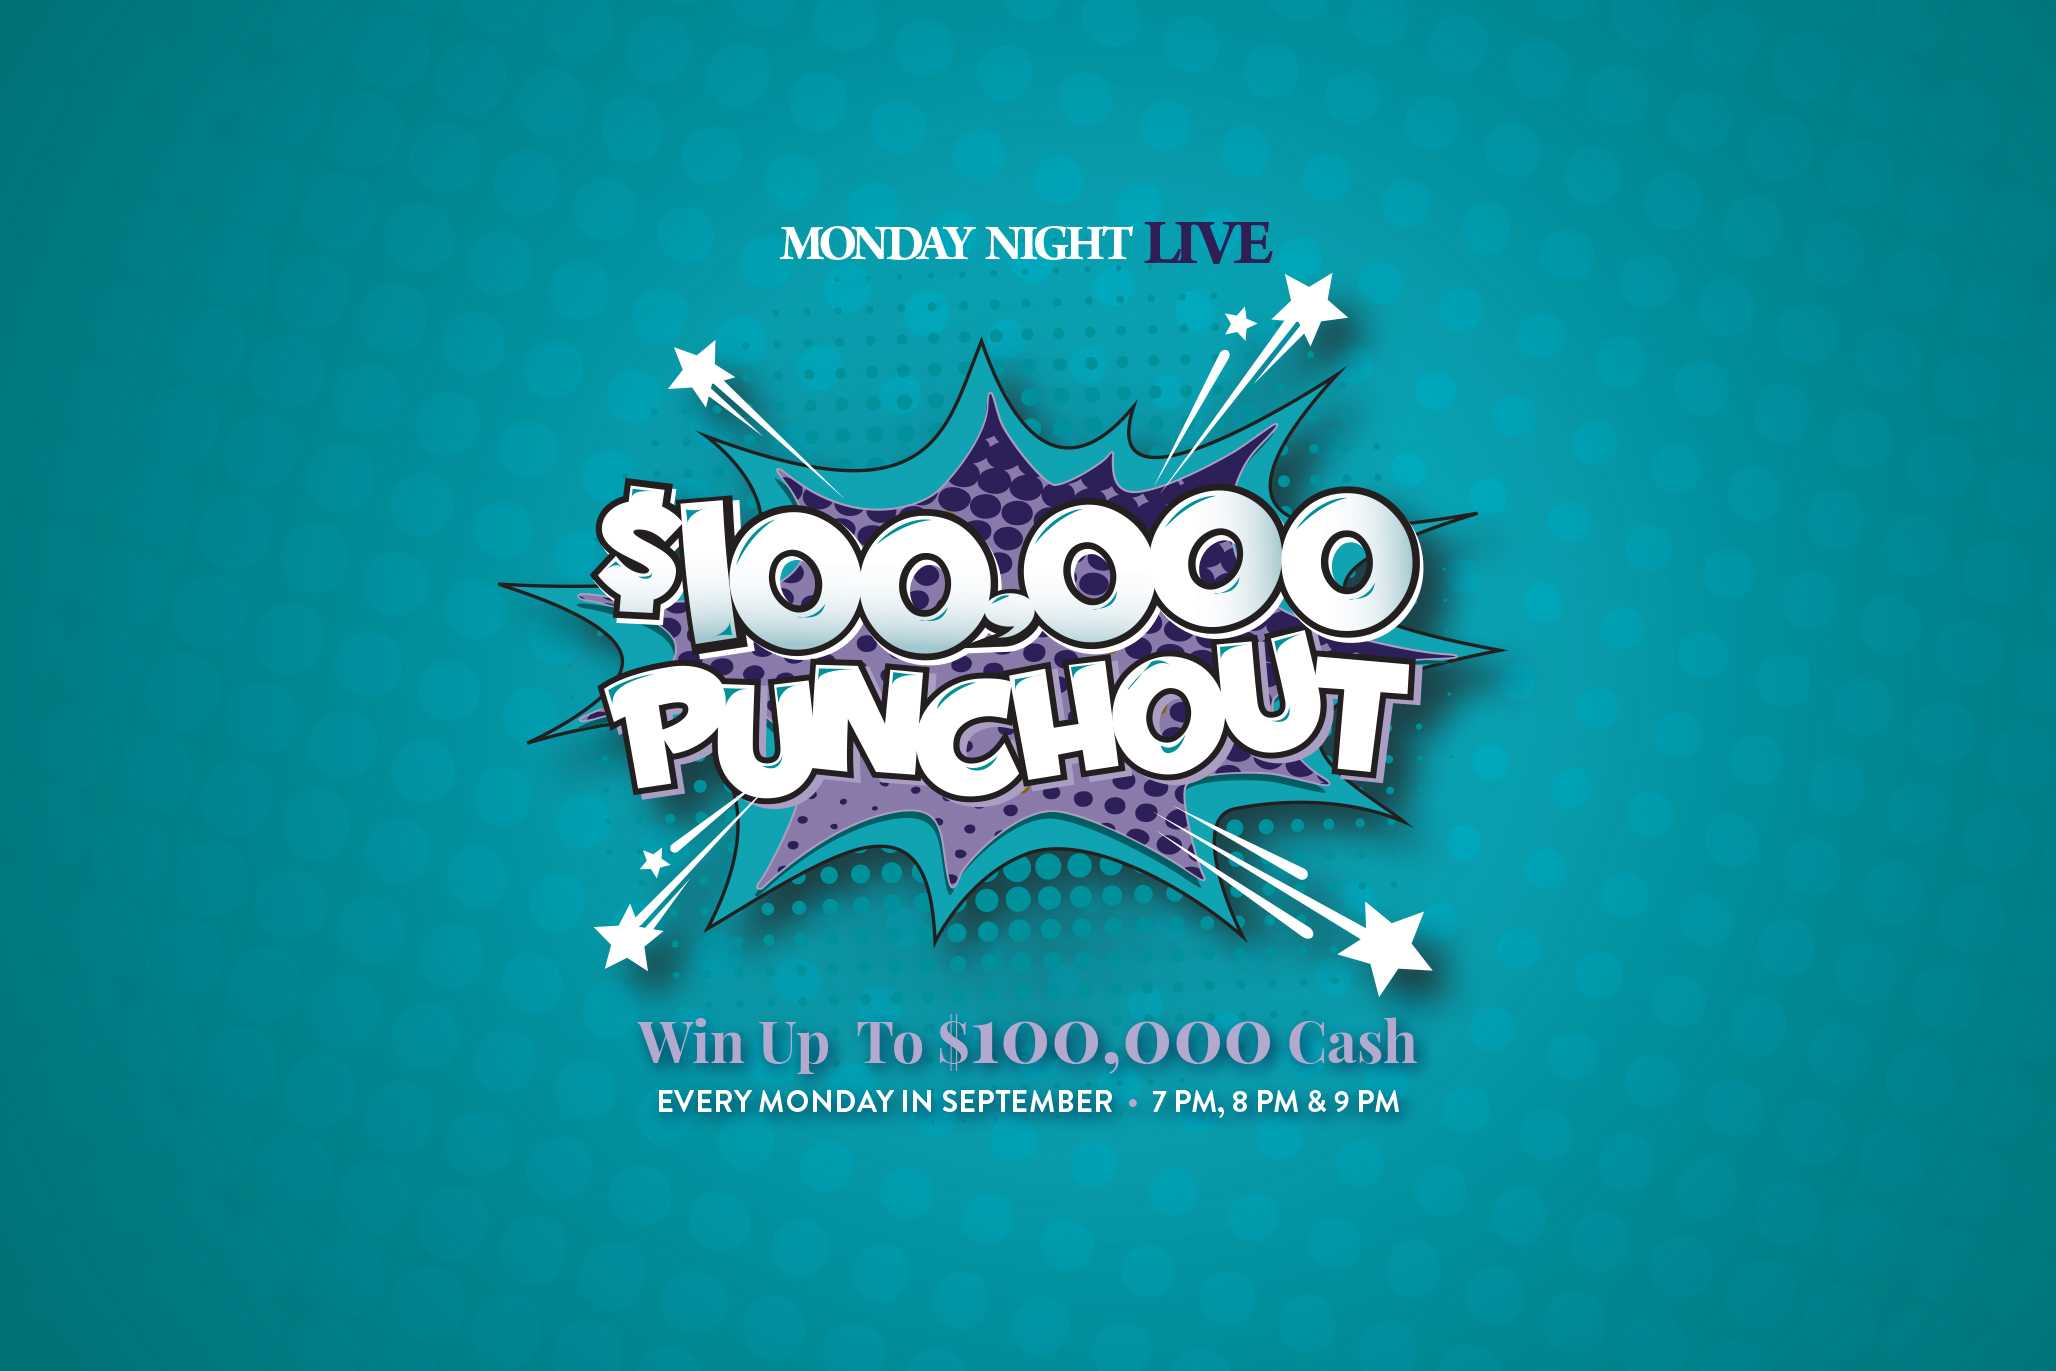 $100,000 punchout promotion